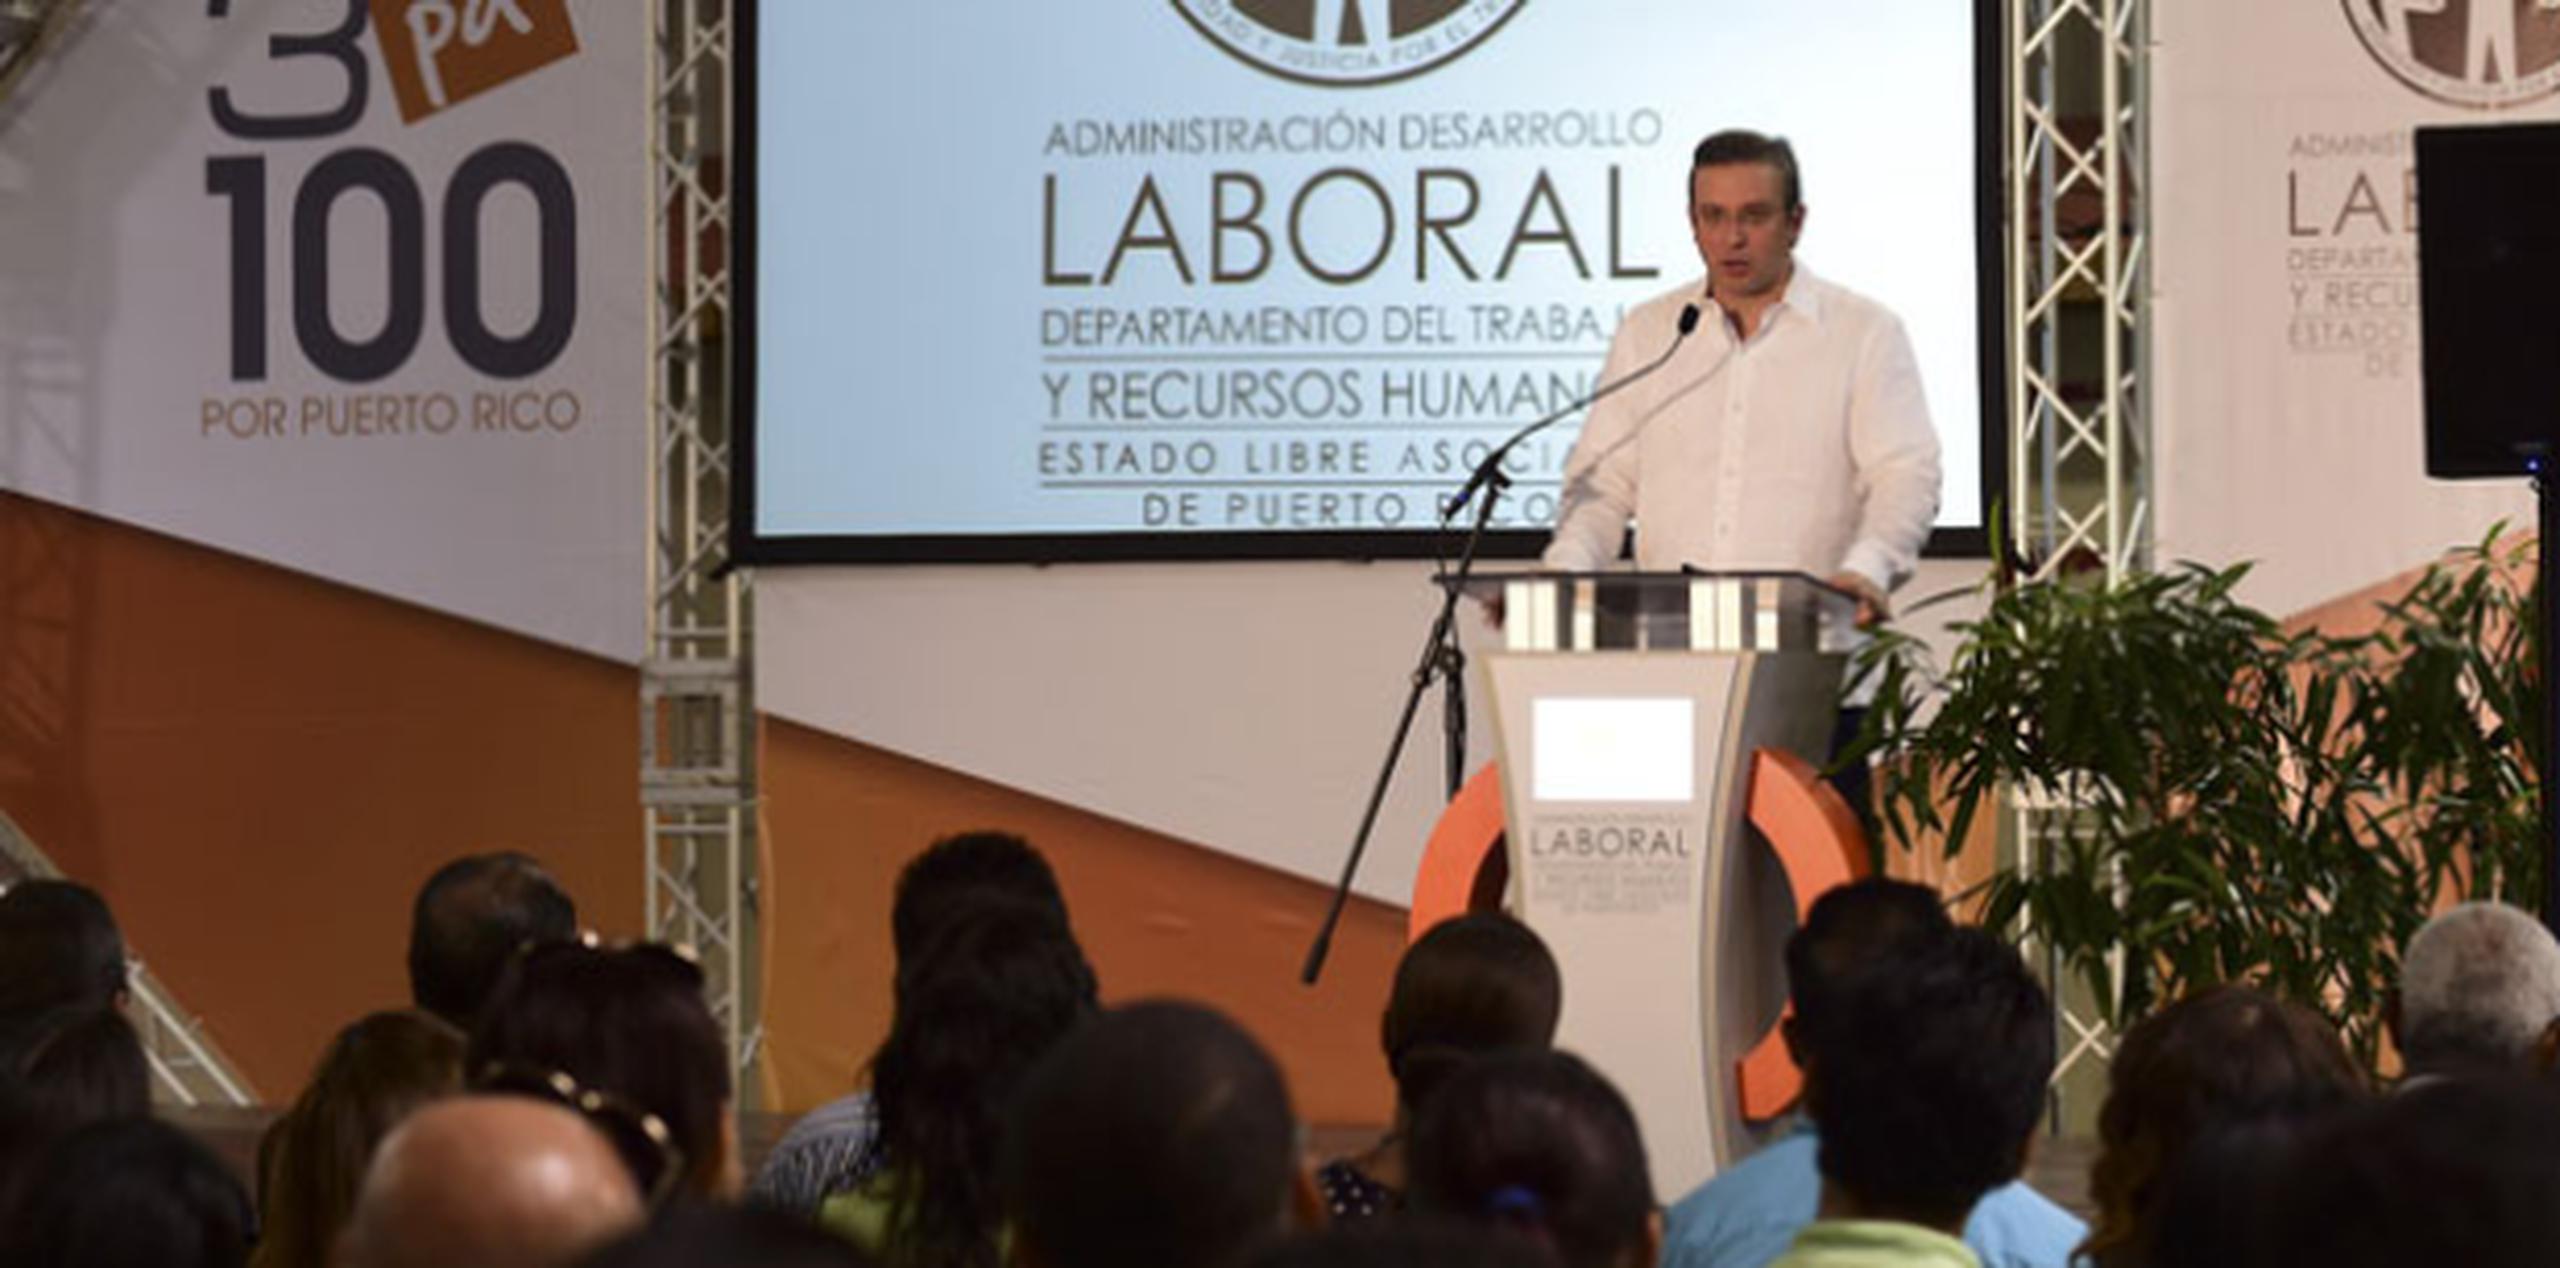 El gobernador Alejandro García Padilla inauguró este miércoles el programa “3 Pa' 100 por Puerto Rico”. (tony.zayas@gfrmedia.com)